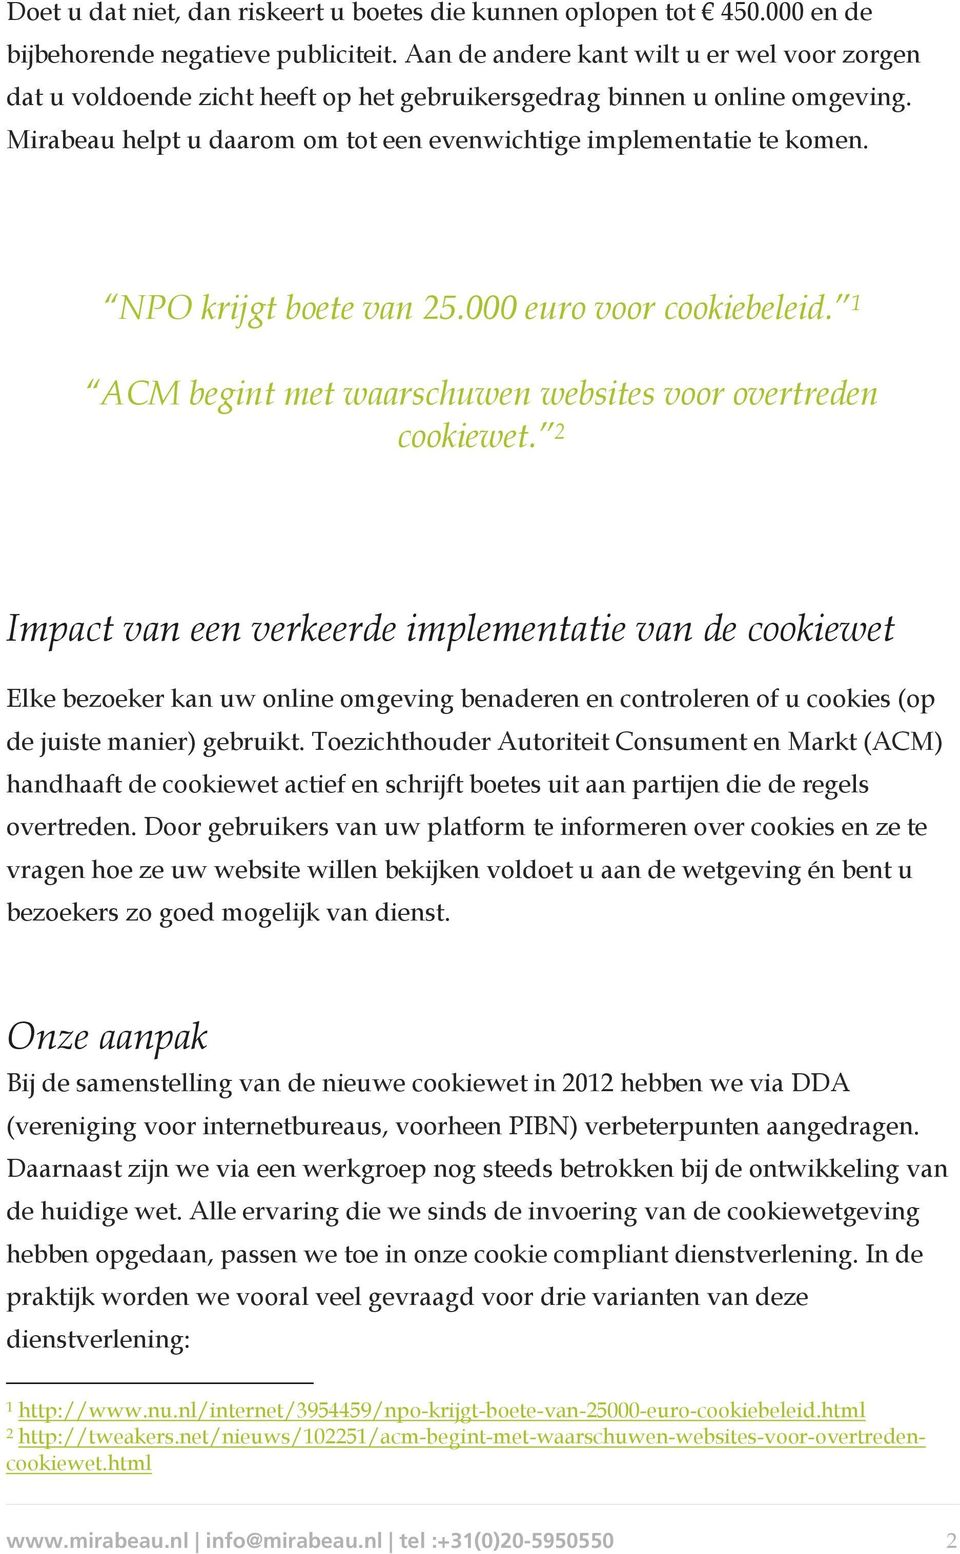 NPO krijgt boete van 25.000 euro voor cookiebeleid. 1 ACM begint met waarschuwen websites voor overtreden cookiewet.